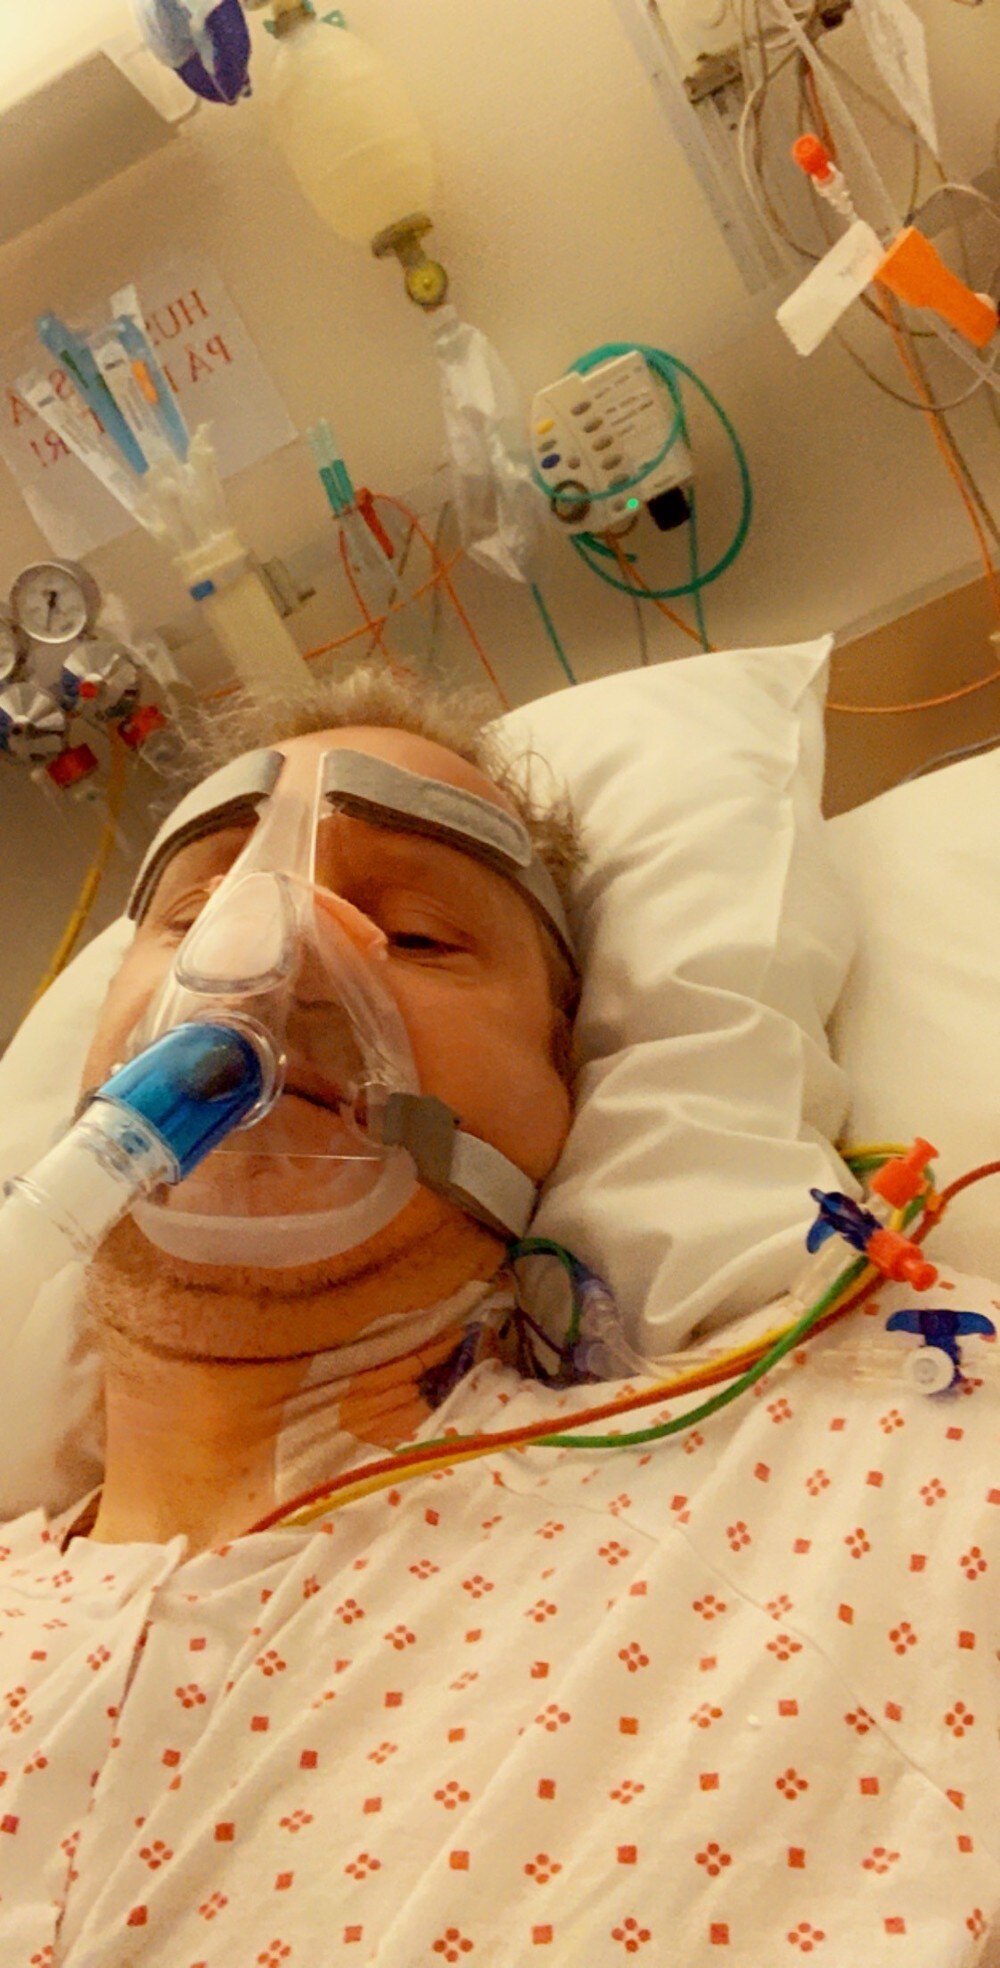 Ørjan (46) fikk påvist korona – lå fire dager i pustemaskin med akutt lungesvikt